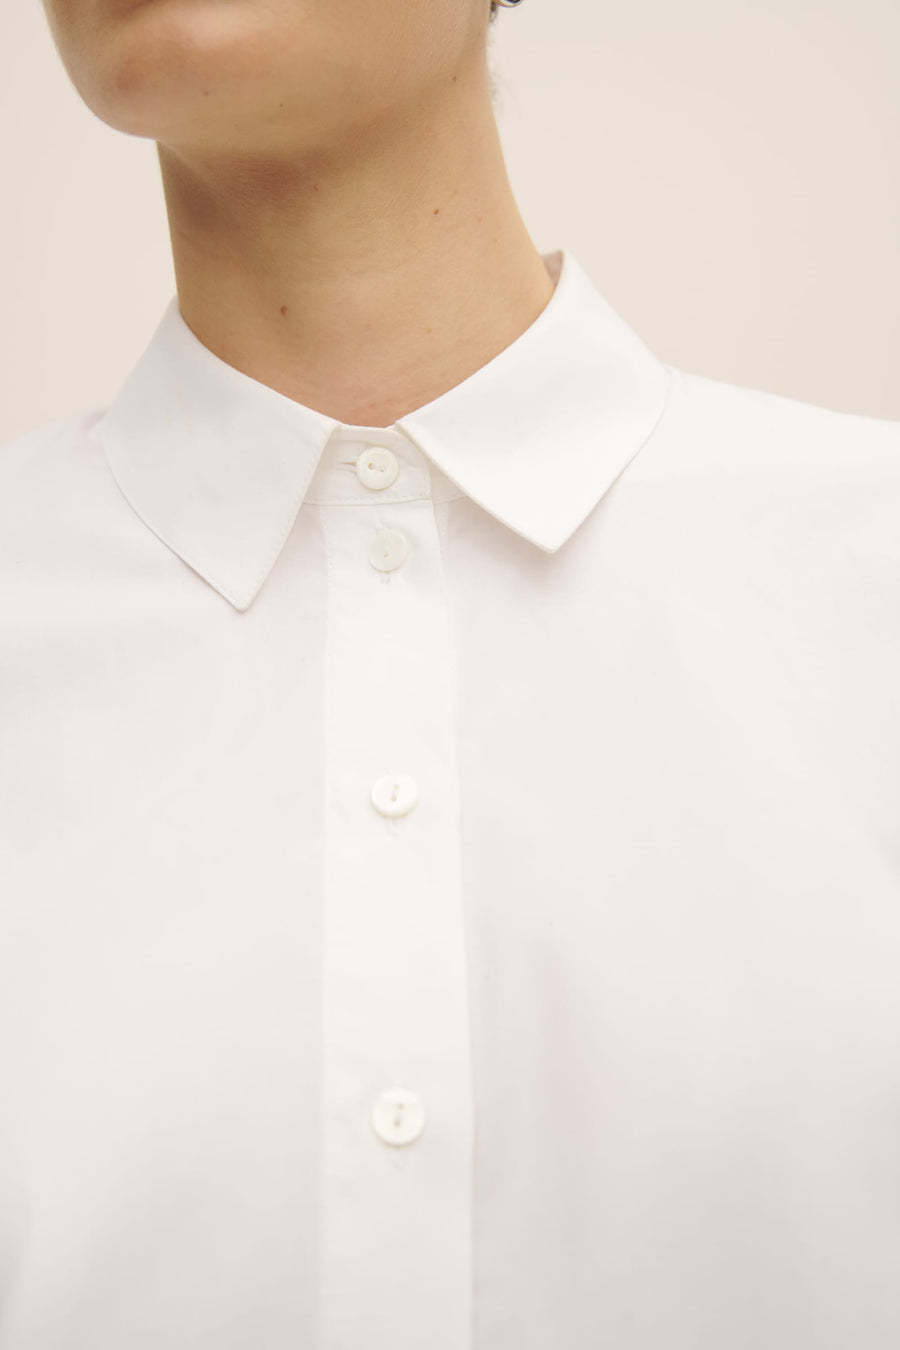 Kowtow • Daily Shirt • White